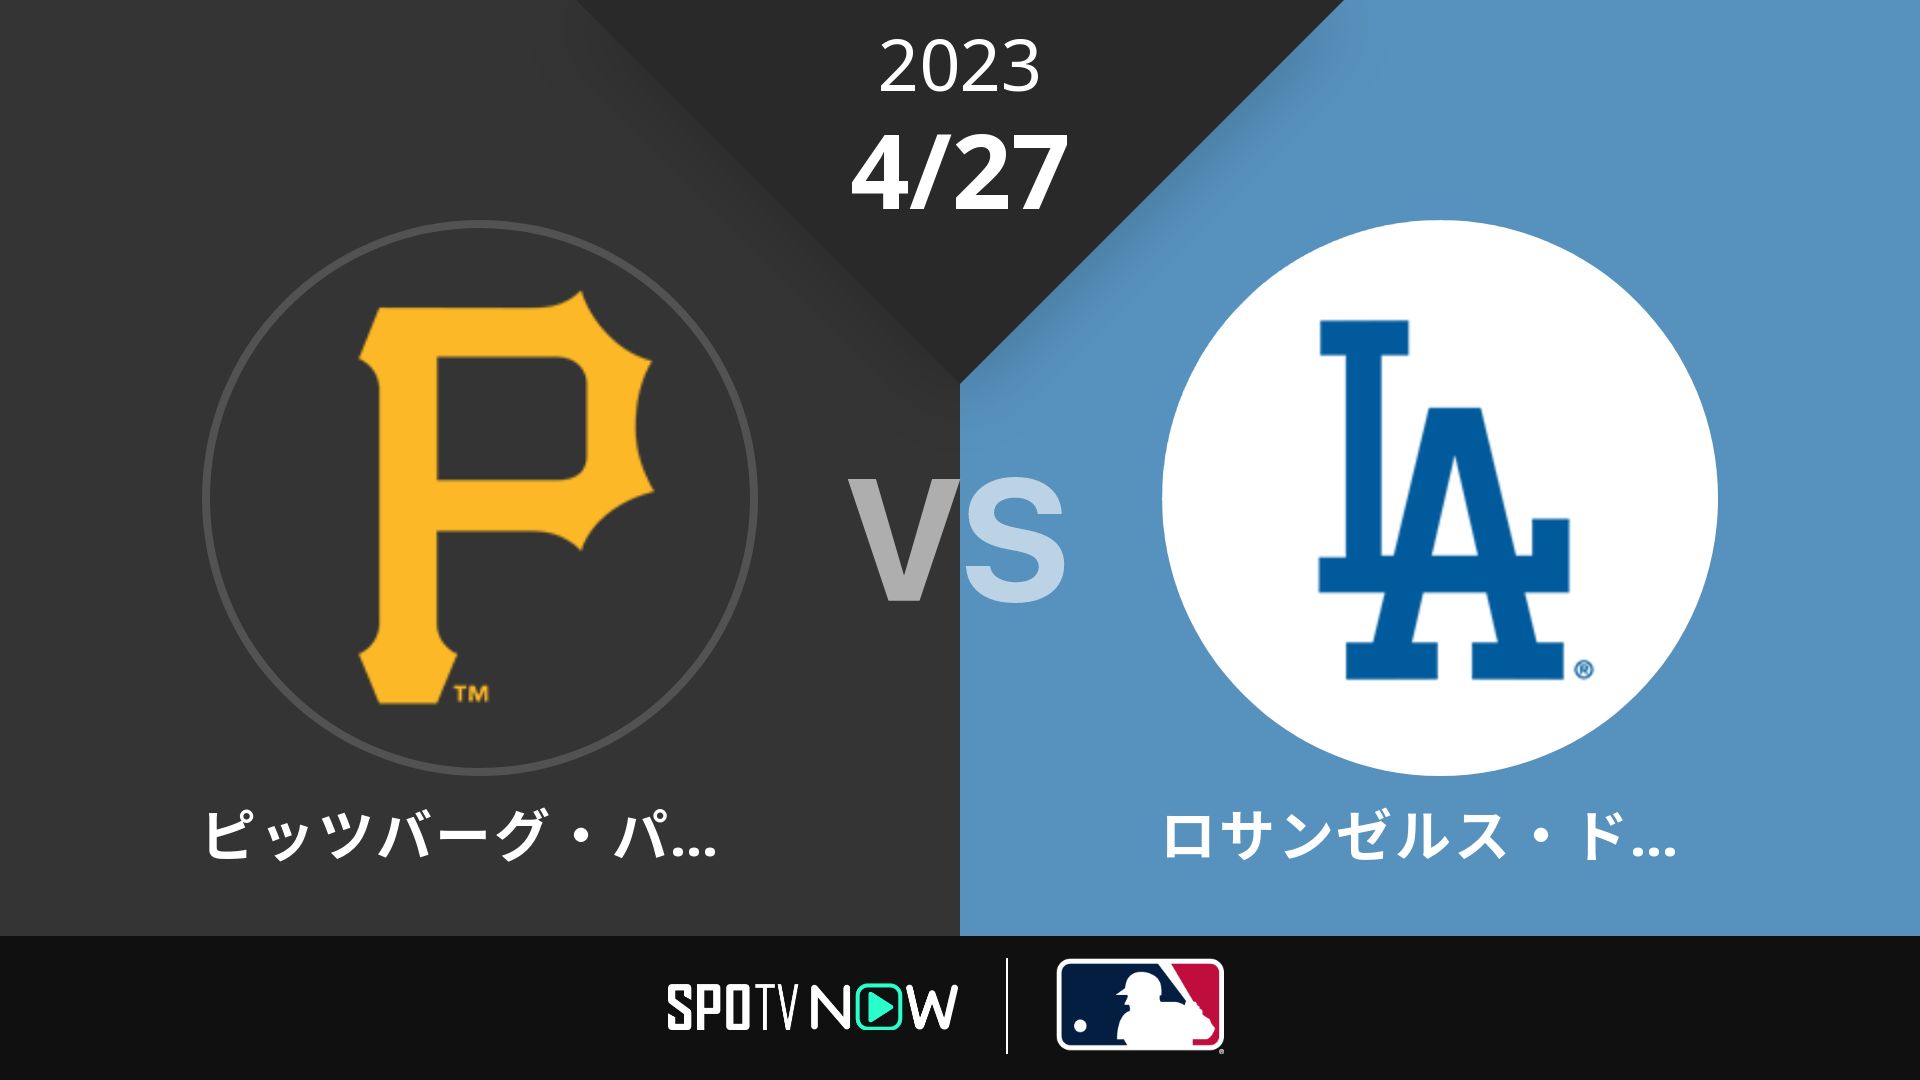 2023/4/27 パイレーツ vs ドジャース [MLB]